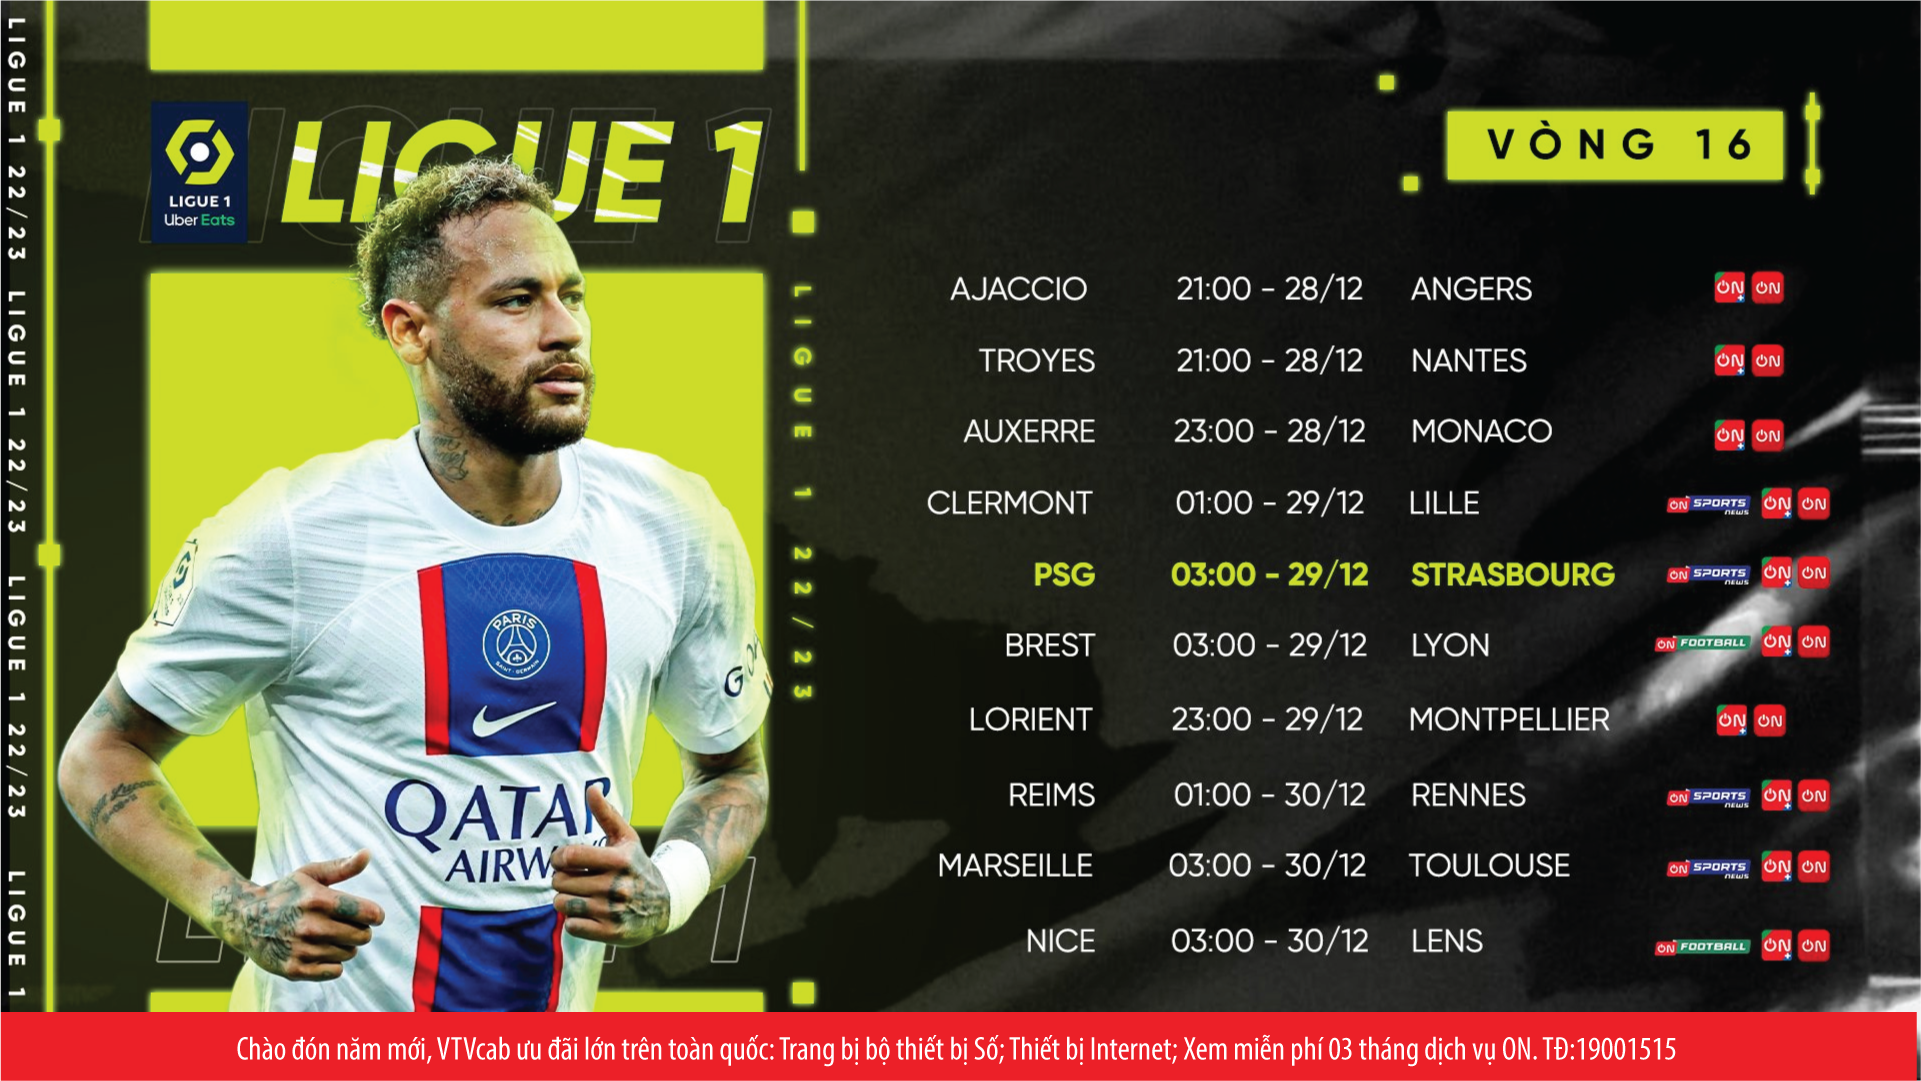 Lịch thi đấu Ligue 1 trên VTVcab. Ảnh VTVcab